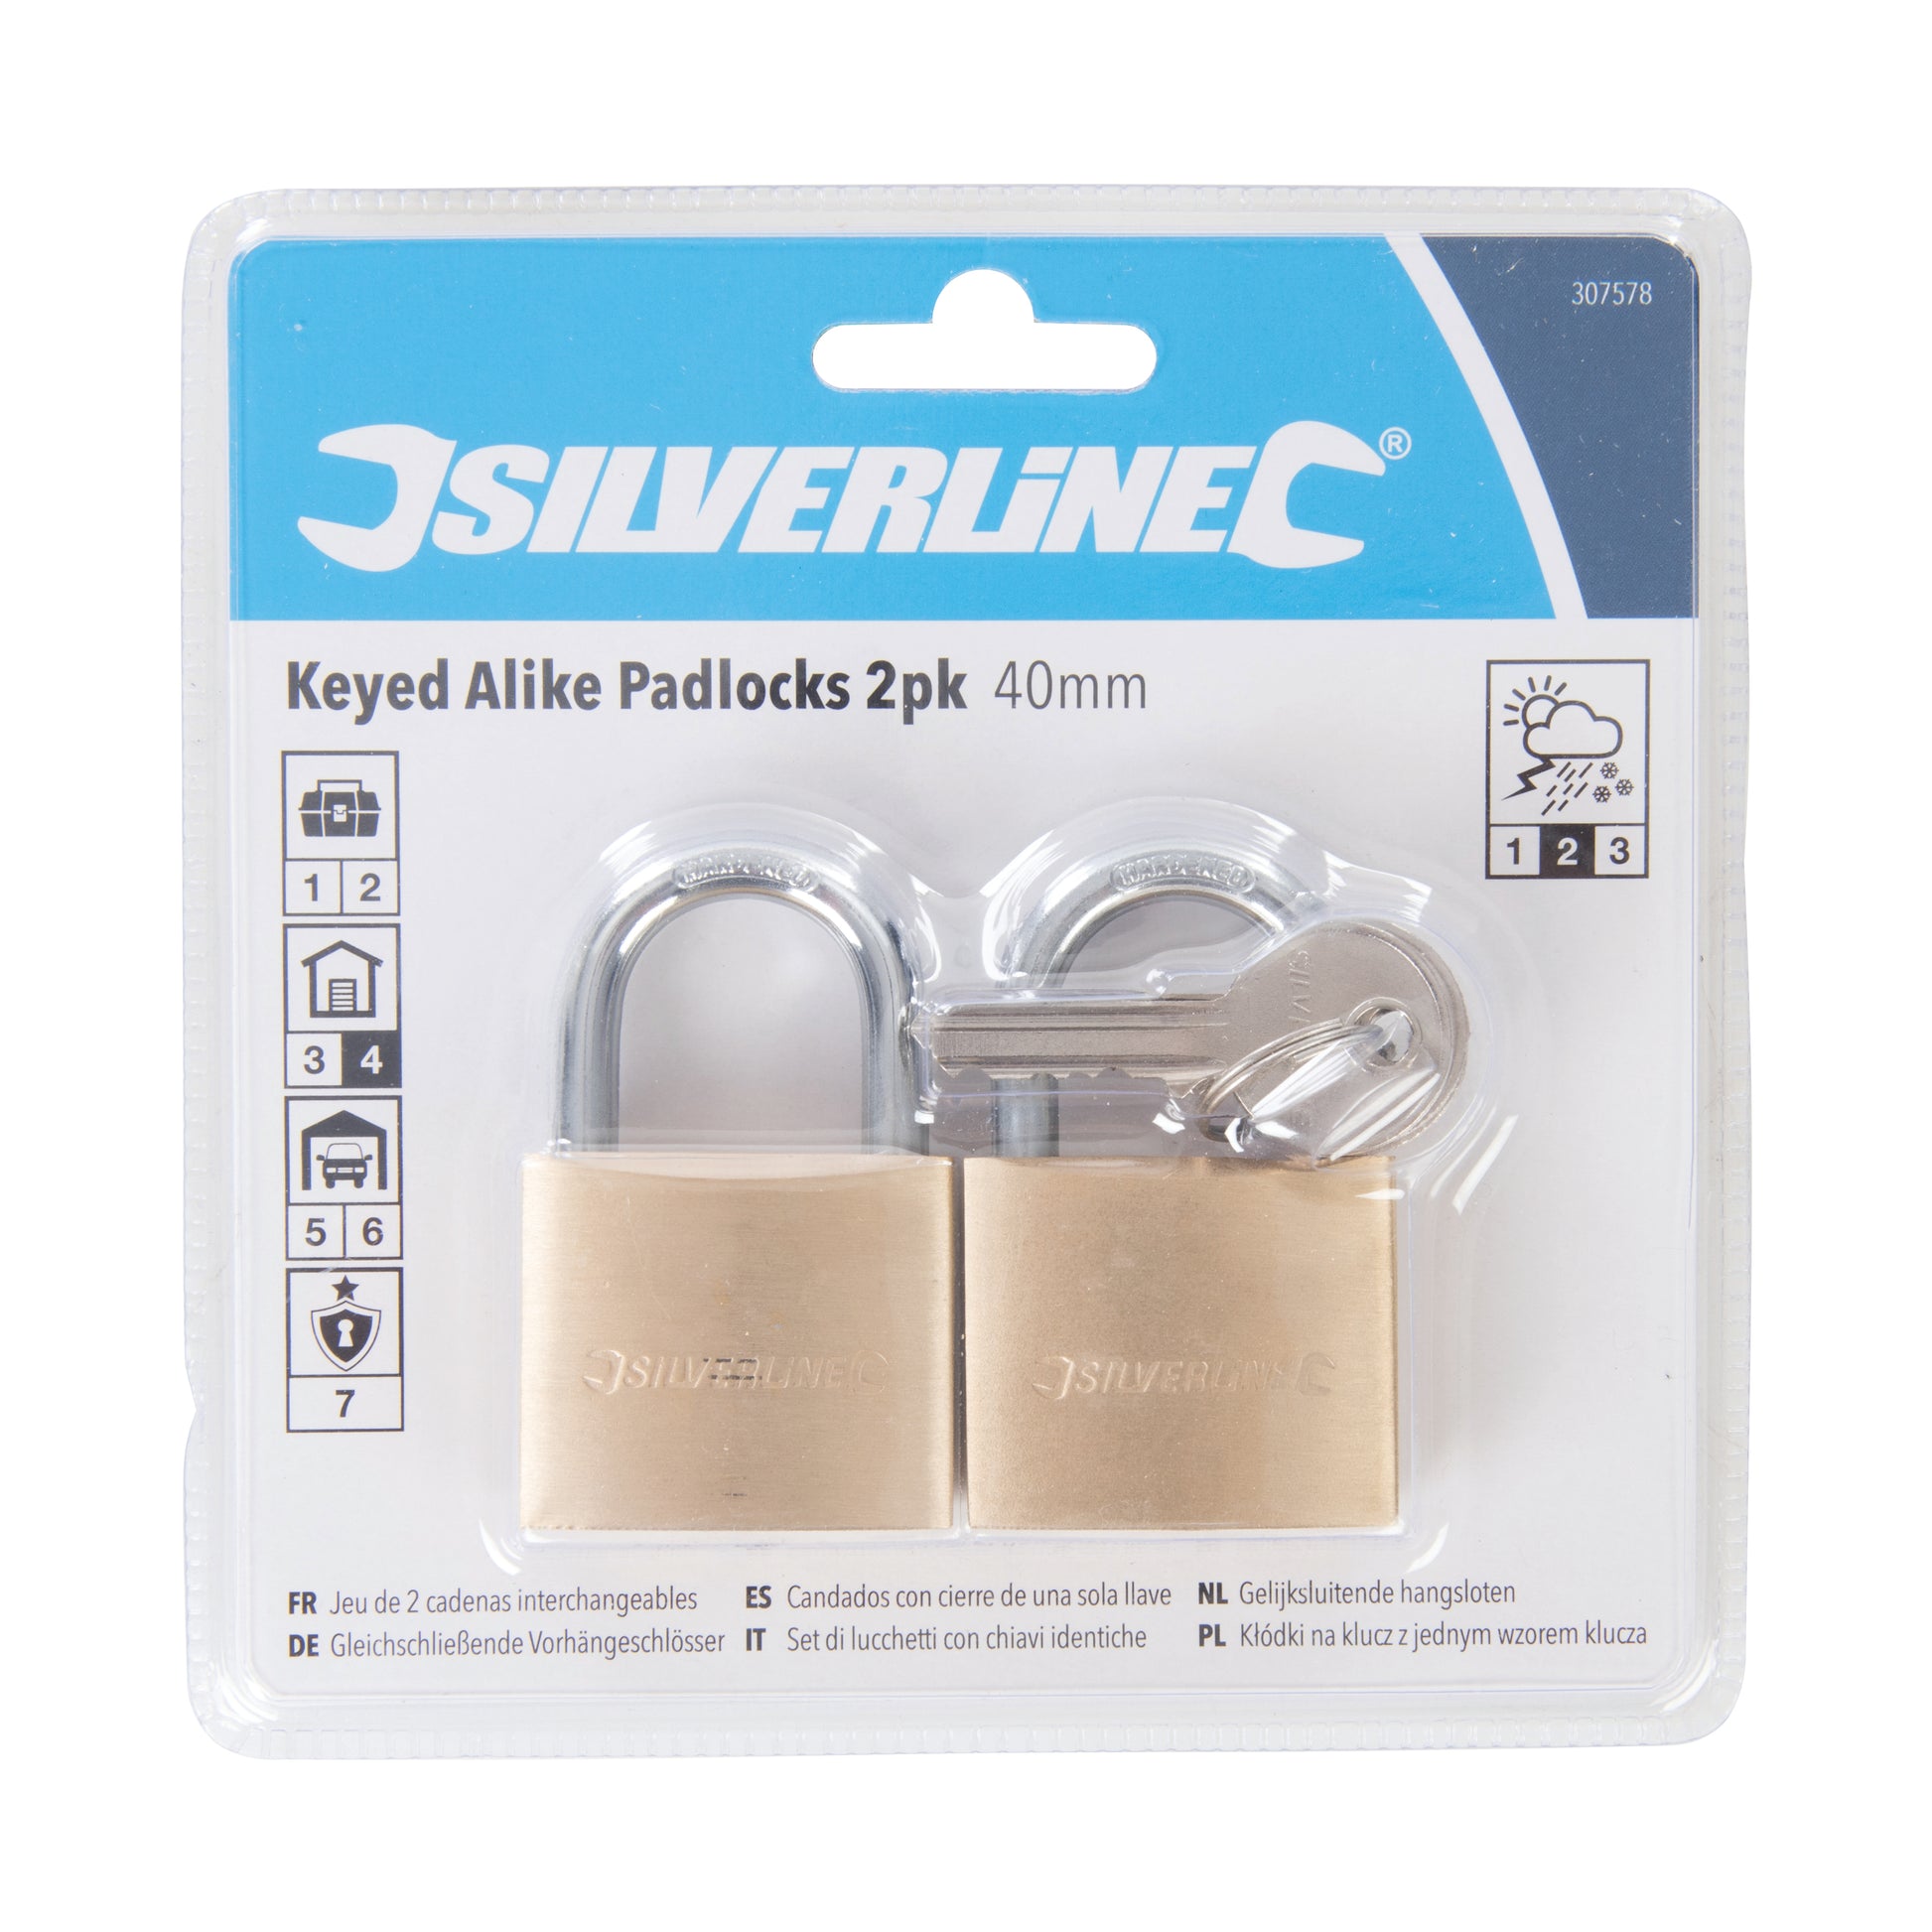 Silverline - Set di lucchetti con chiavi identiche 2 p.zi Eternal Brico